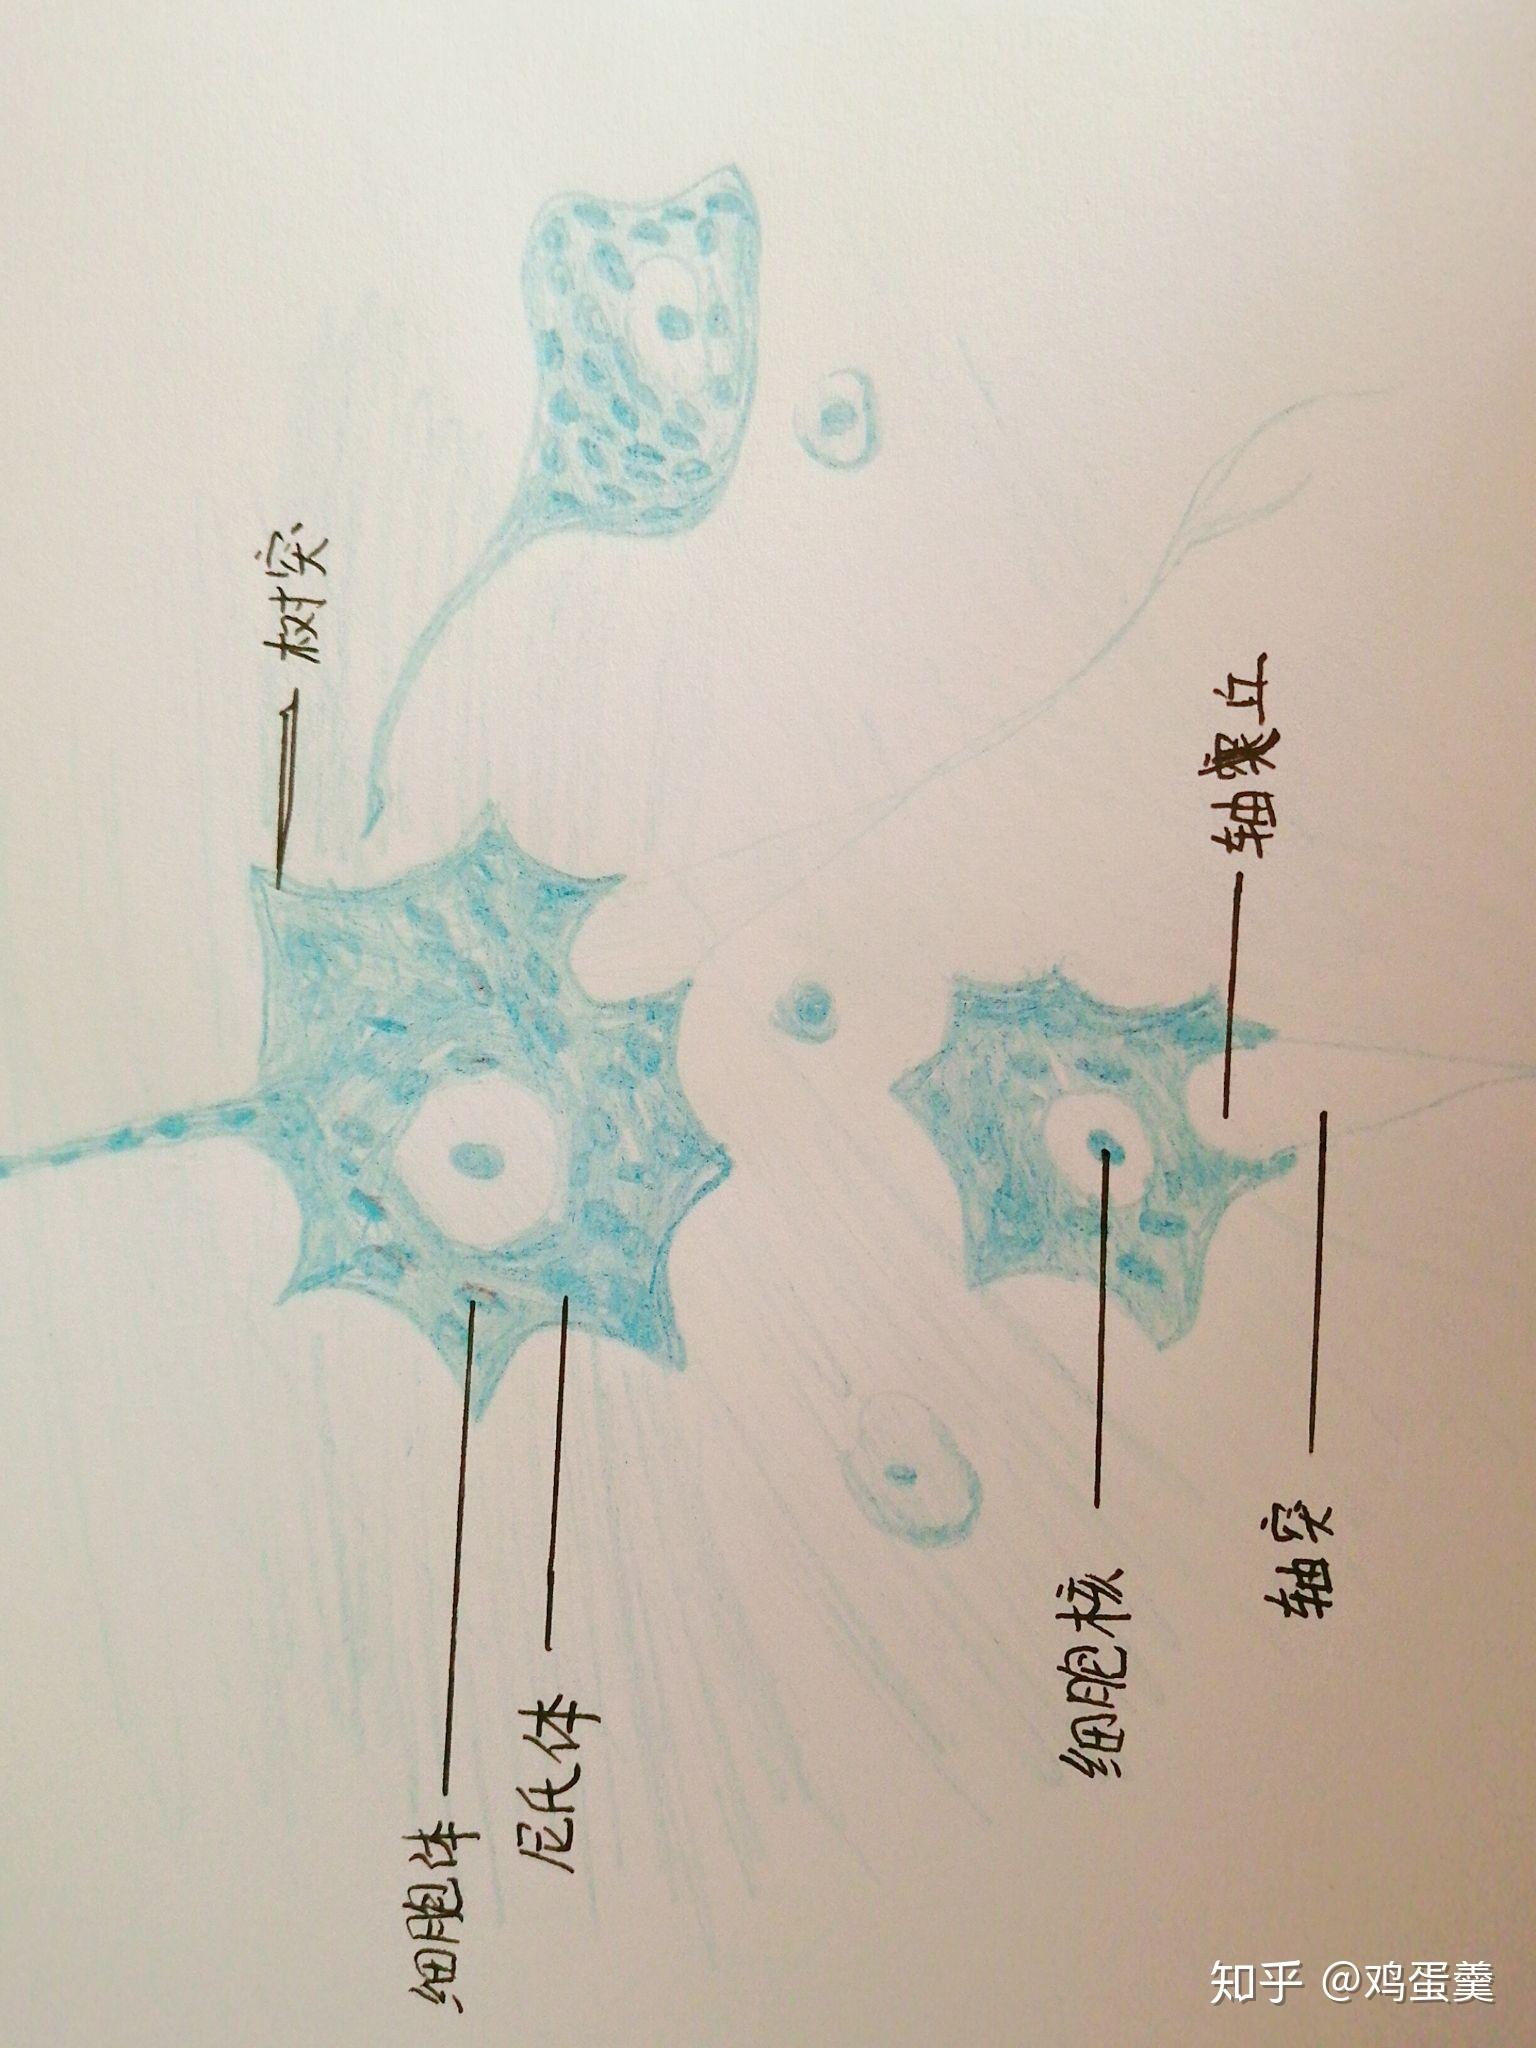 神经元细胞模式图手绘图片